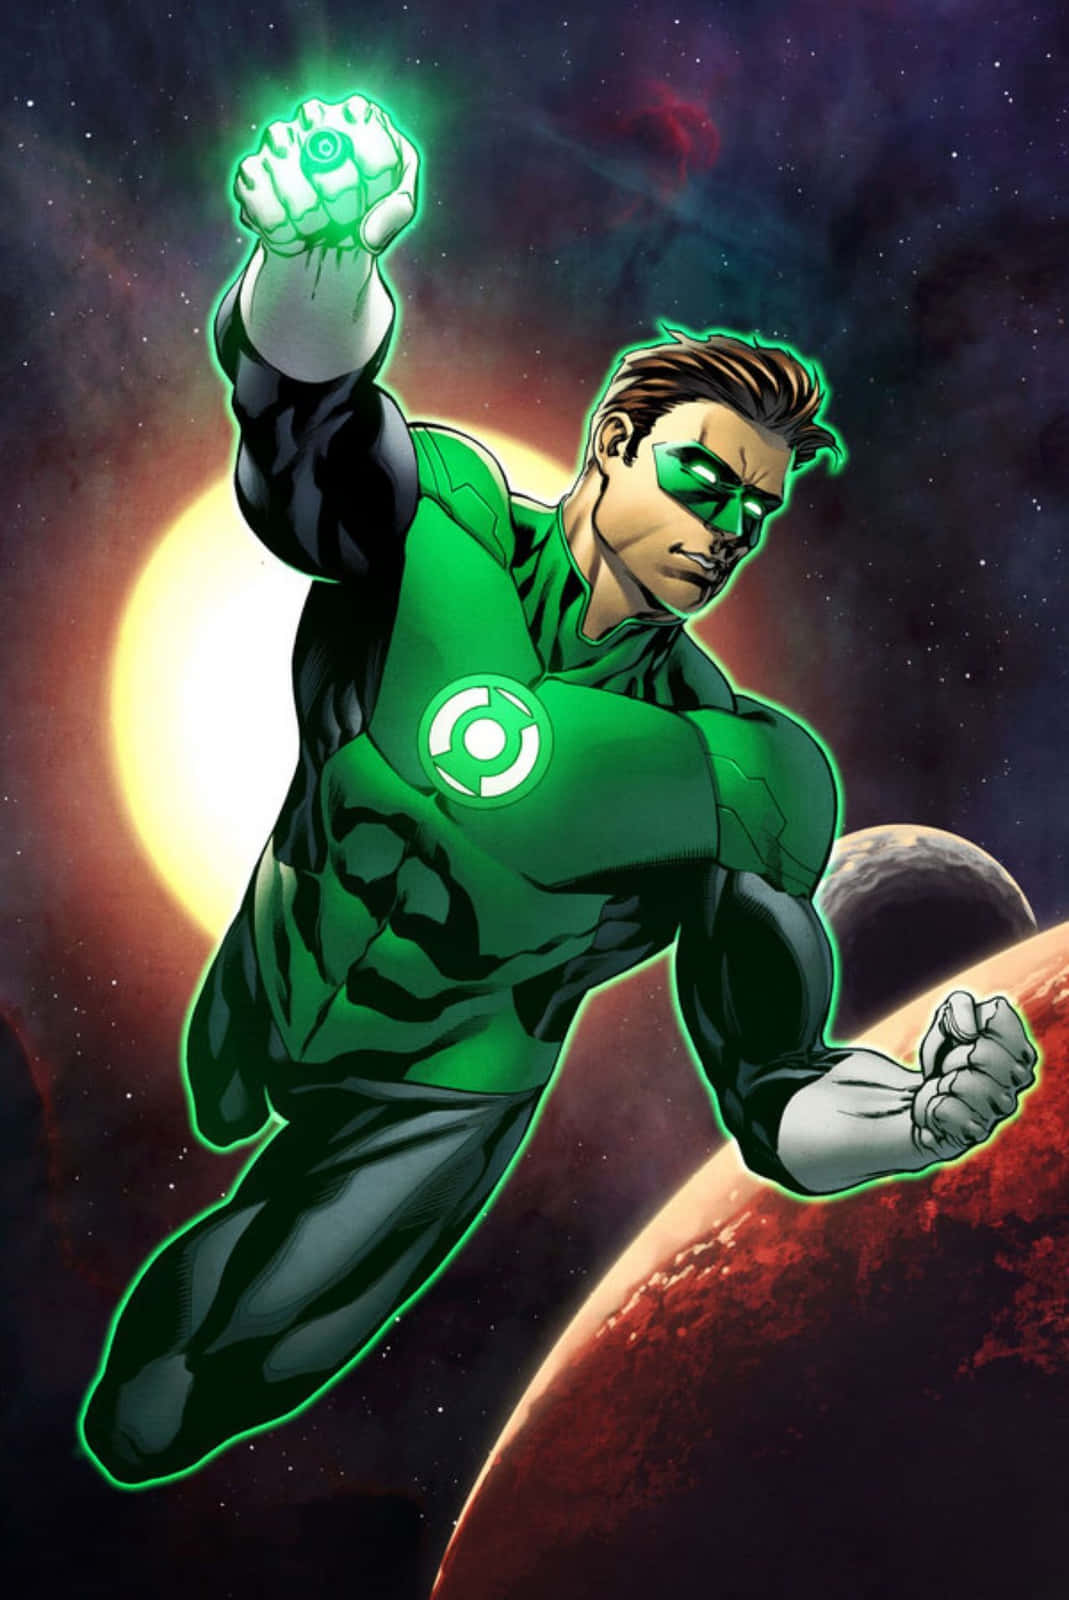 Unaimagen Llamativa Y Colorida Del Símbolo De Green Lantern